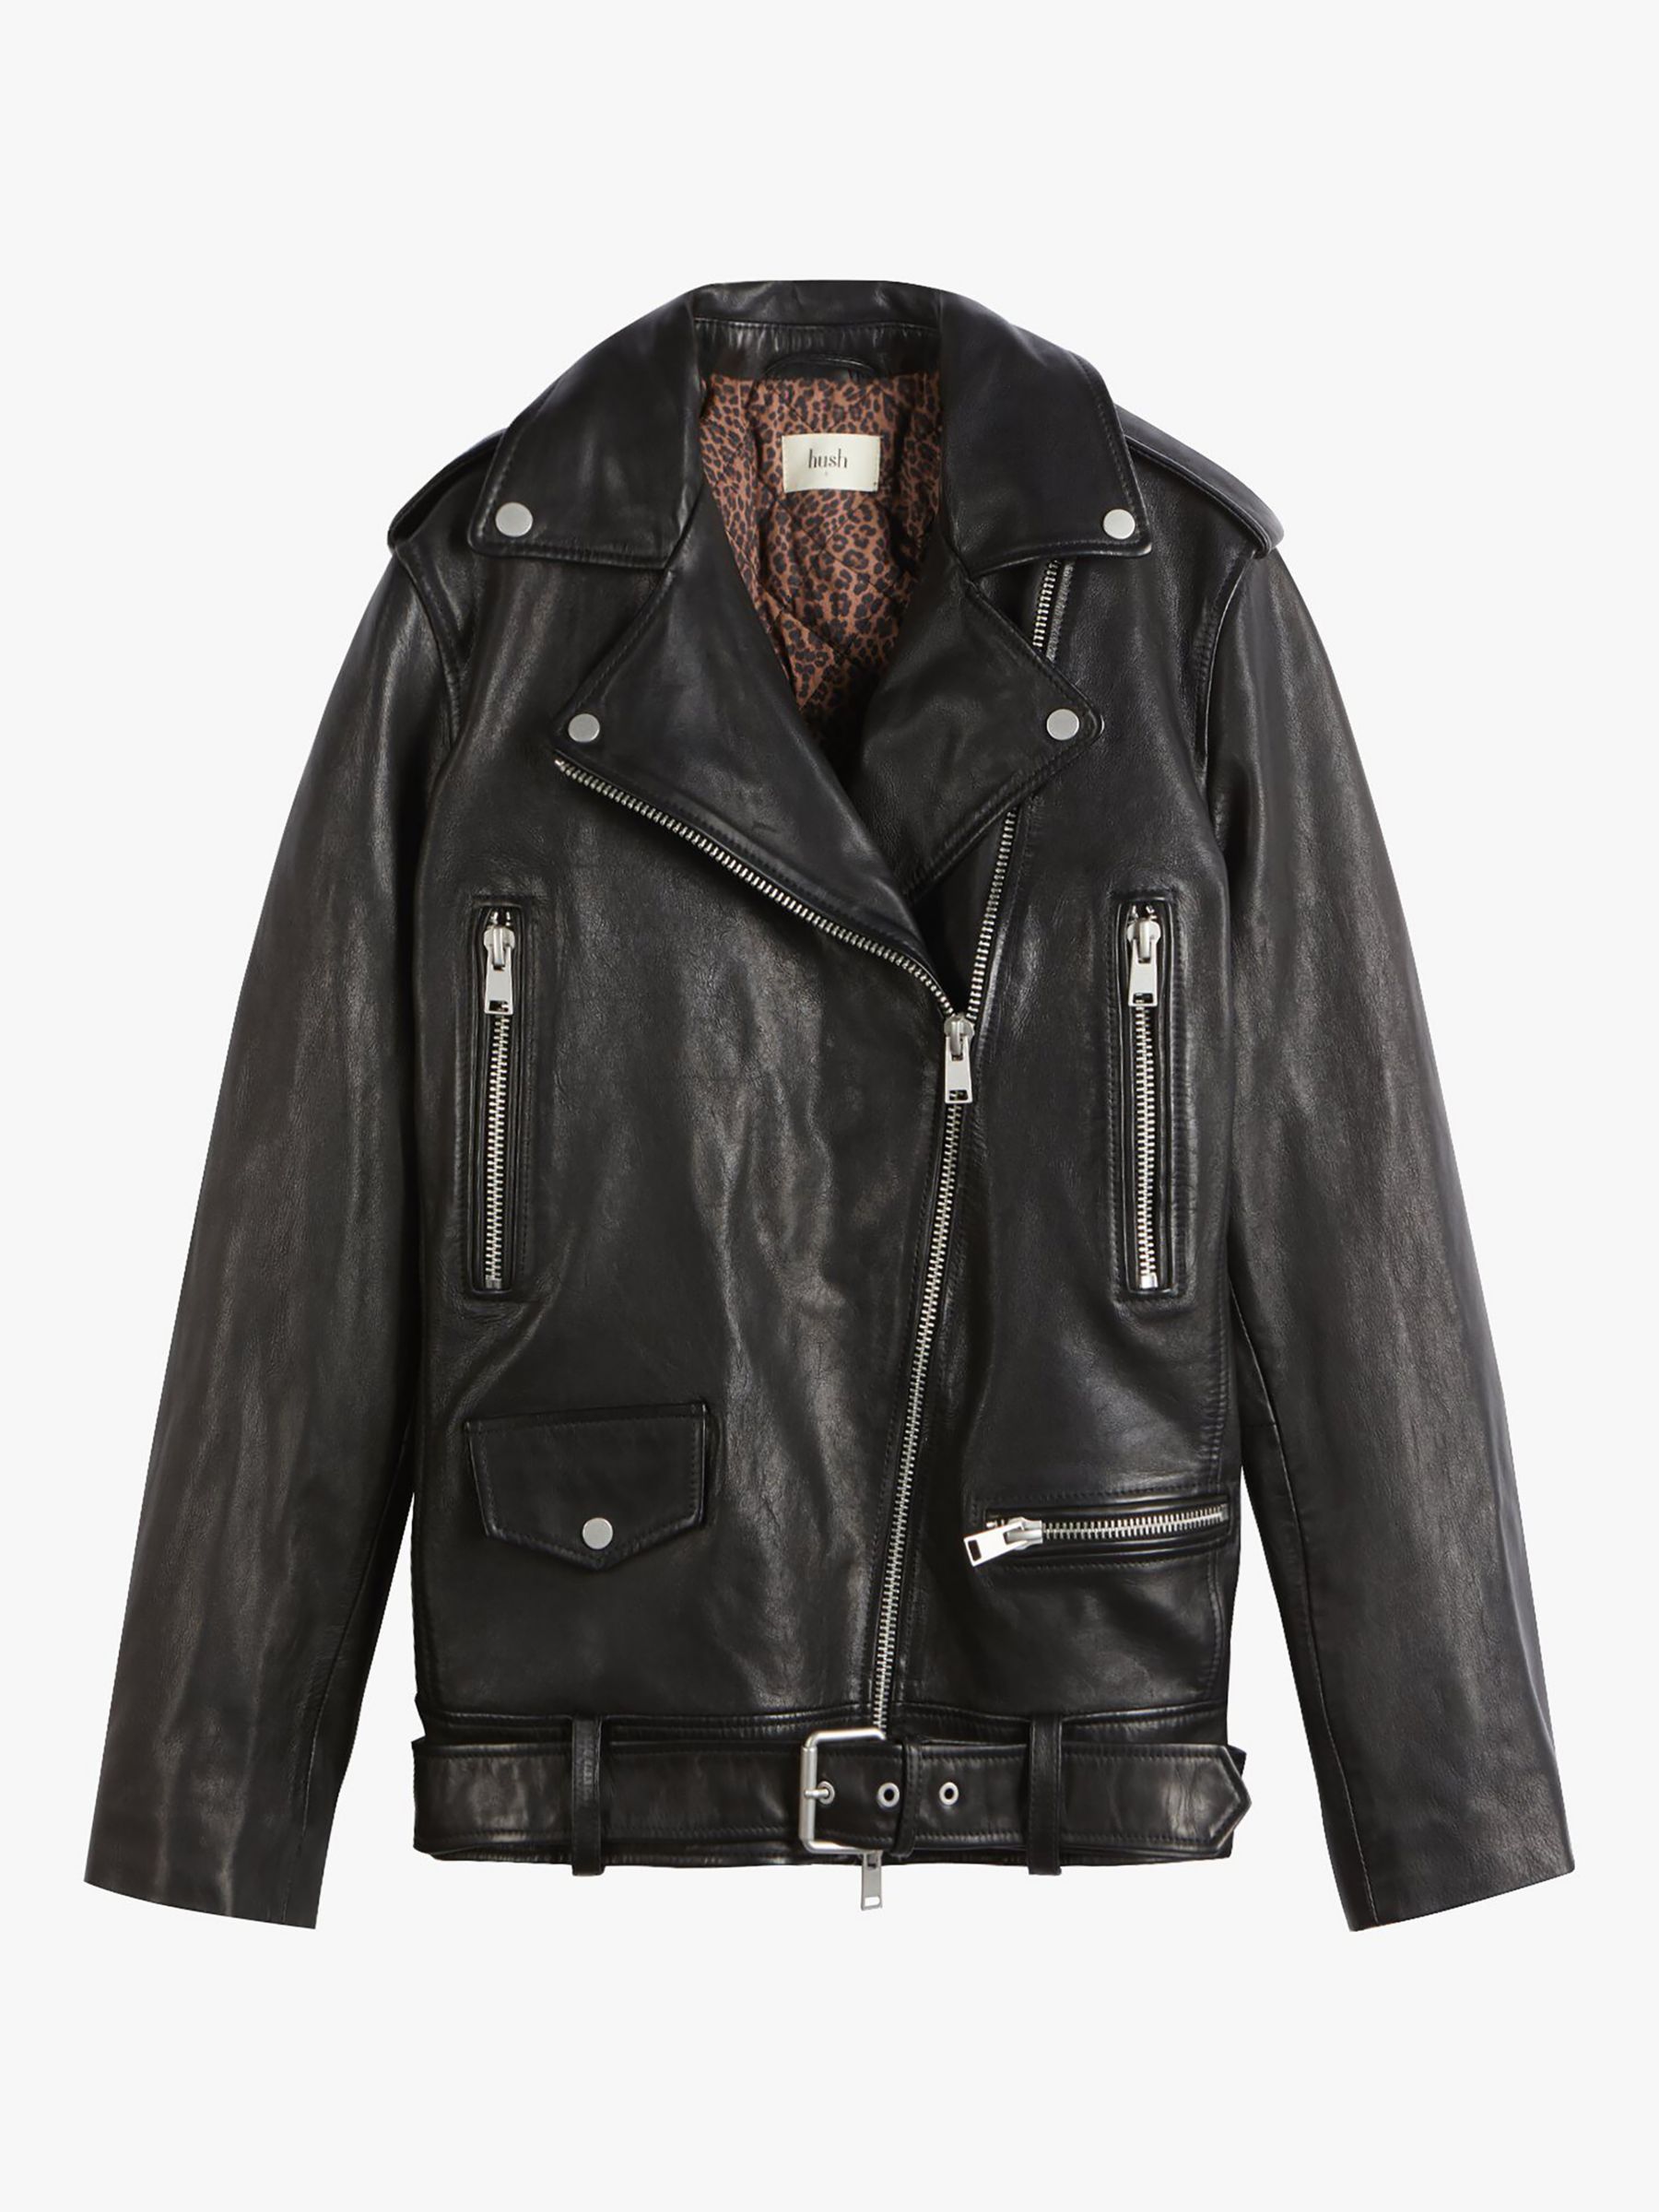 Buy HUSH Oversized Leather Biker Jacket, Black Online at johnlewis.com